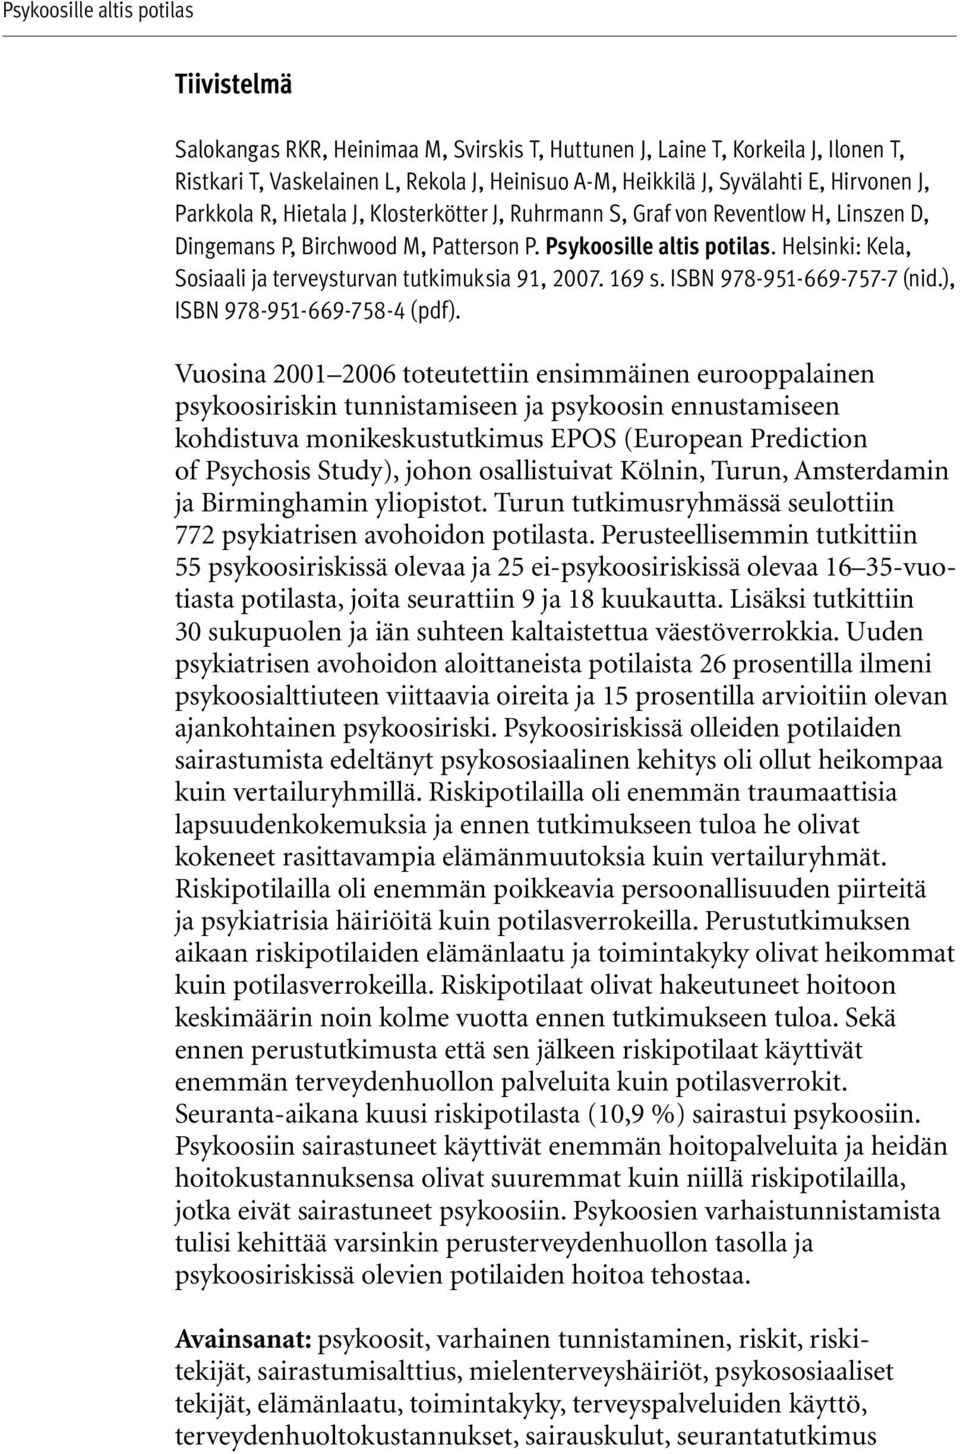 Helsinki: Kela, Sosiaali ja terveysturvan tutkimuksia 91, 2007. 169 s. ISBN 978-951-669-757-7 (nid.), ISBN 978-951-669-758-4 (pdf).